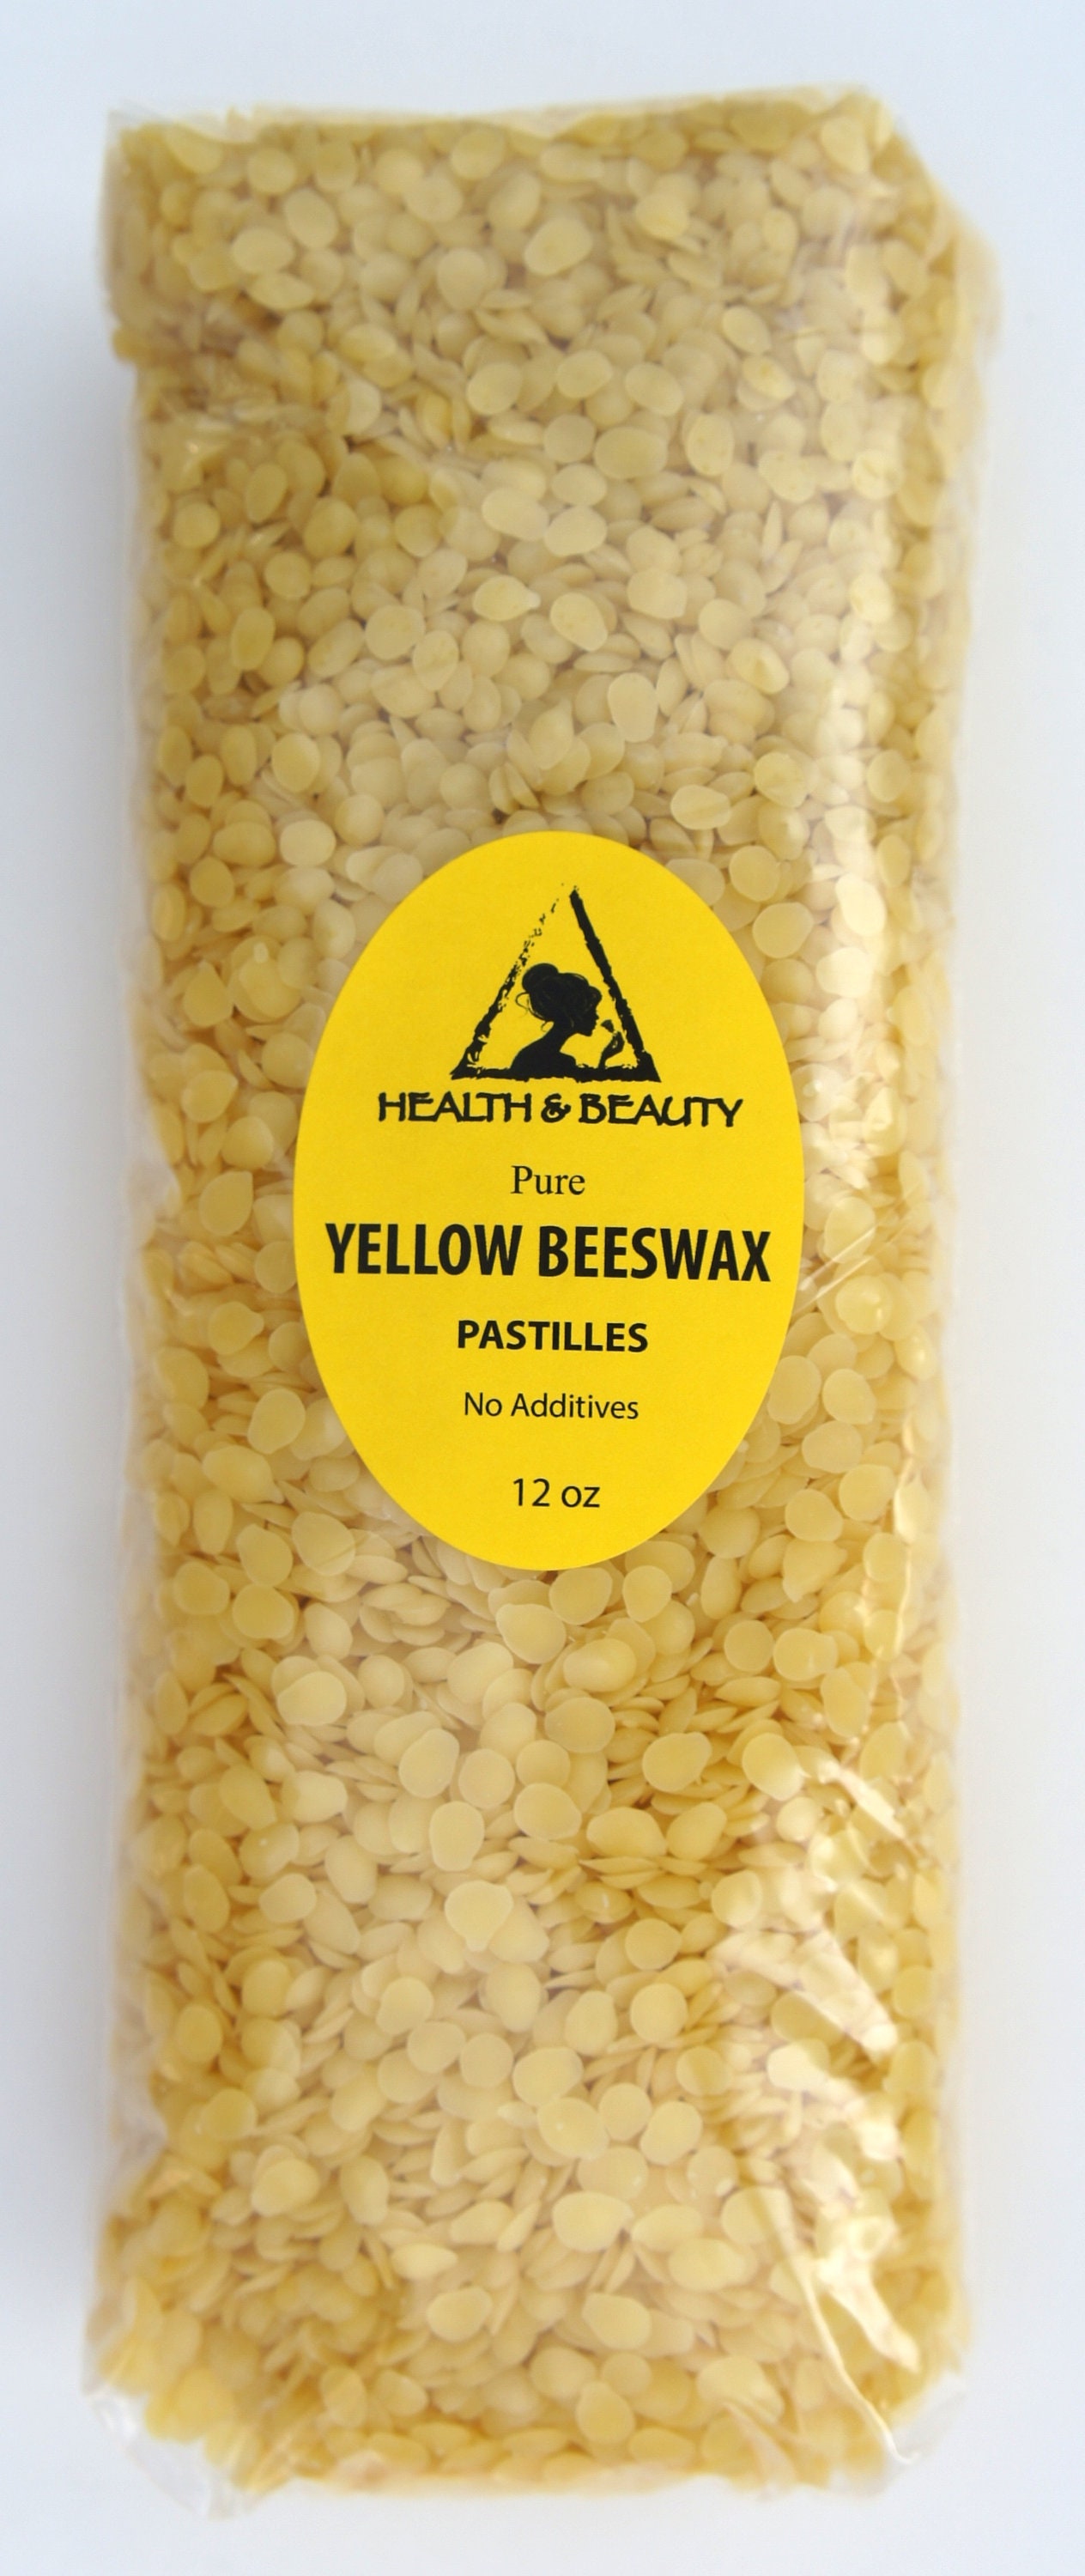 Yellow Beeswax Pellets 1lb (16oz), Pure, Natural, Organic, Bees